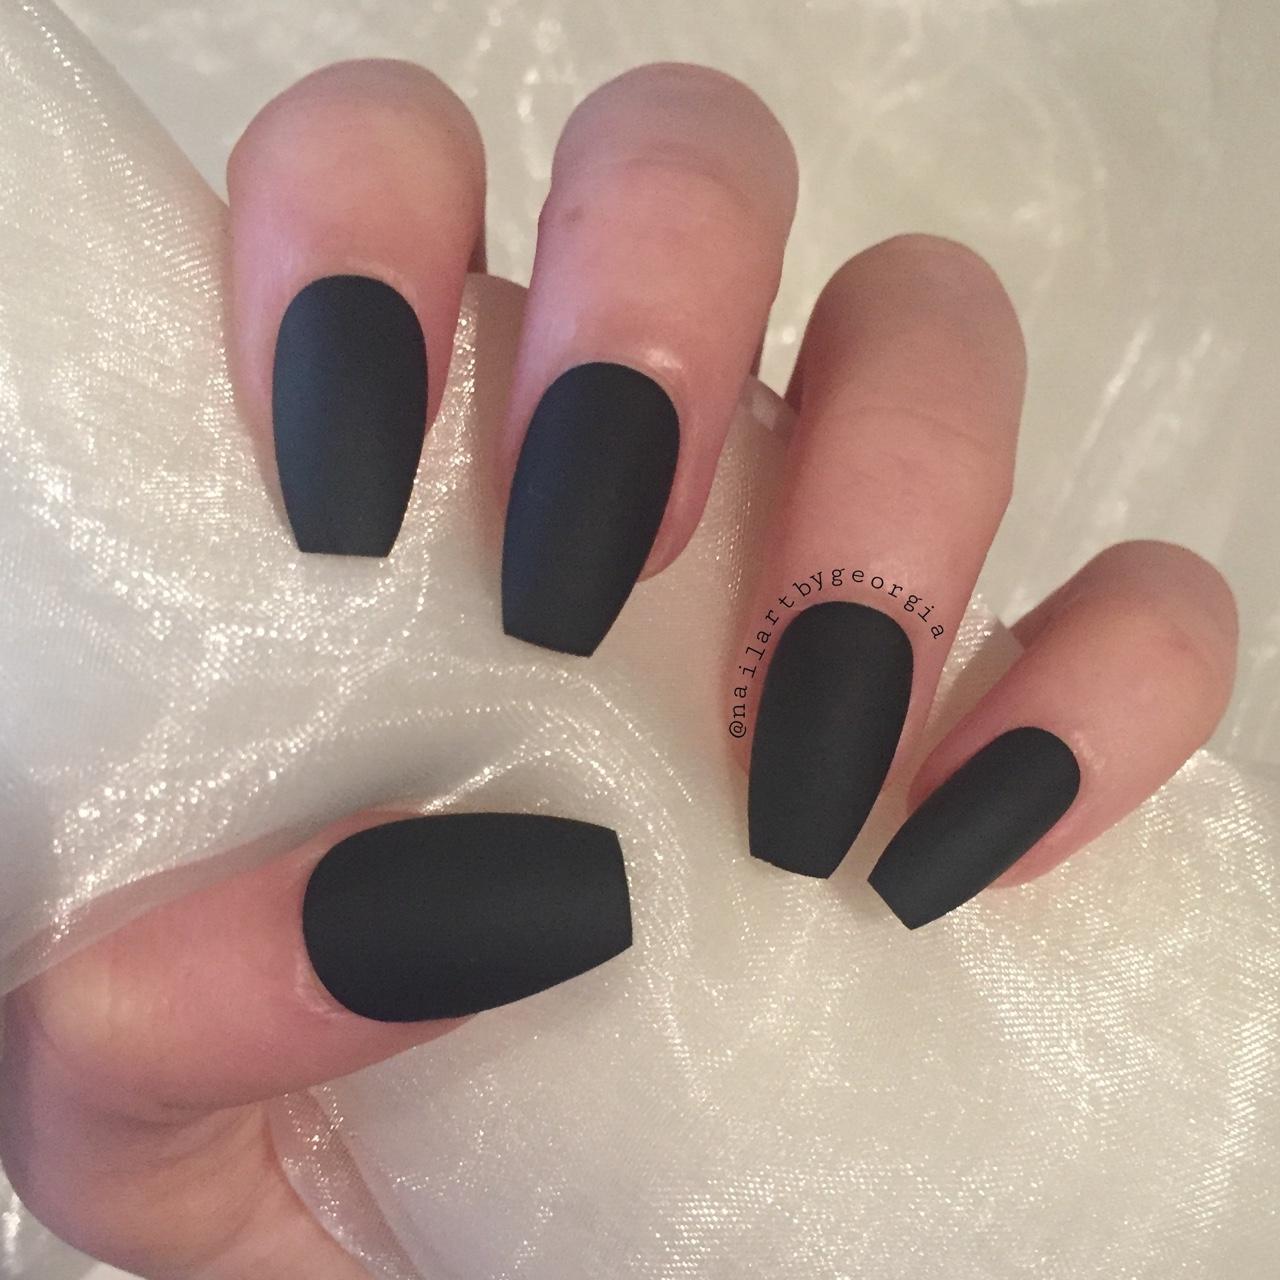 Matt black nails 💅 ❤ them - The Nail Shop by Samantha | Facebook